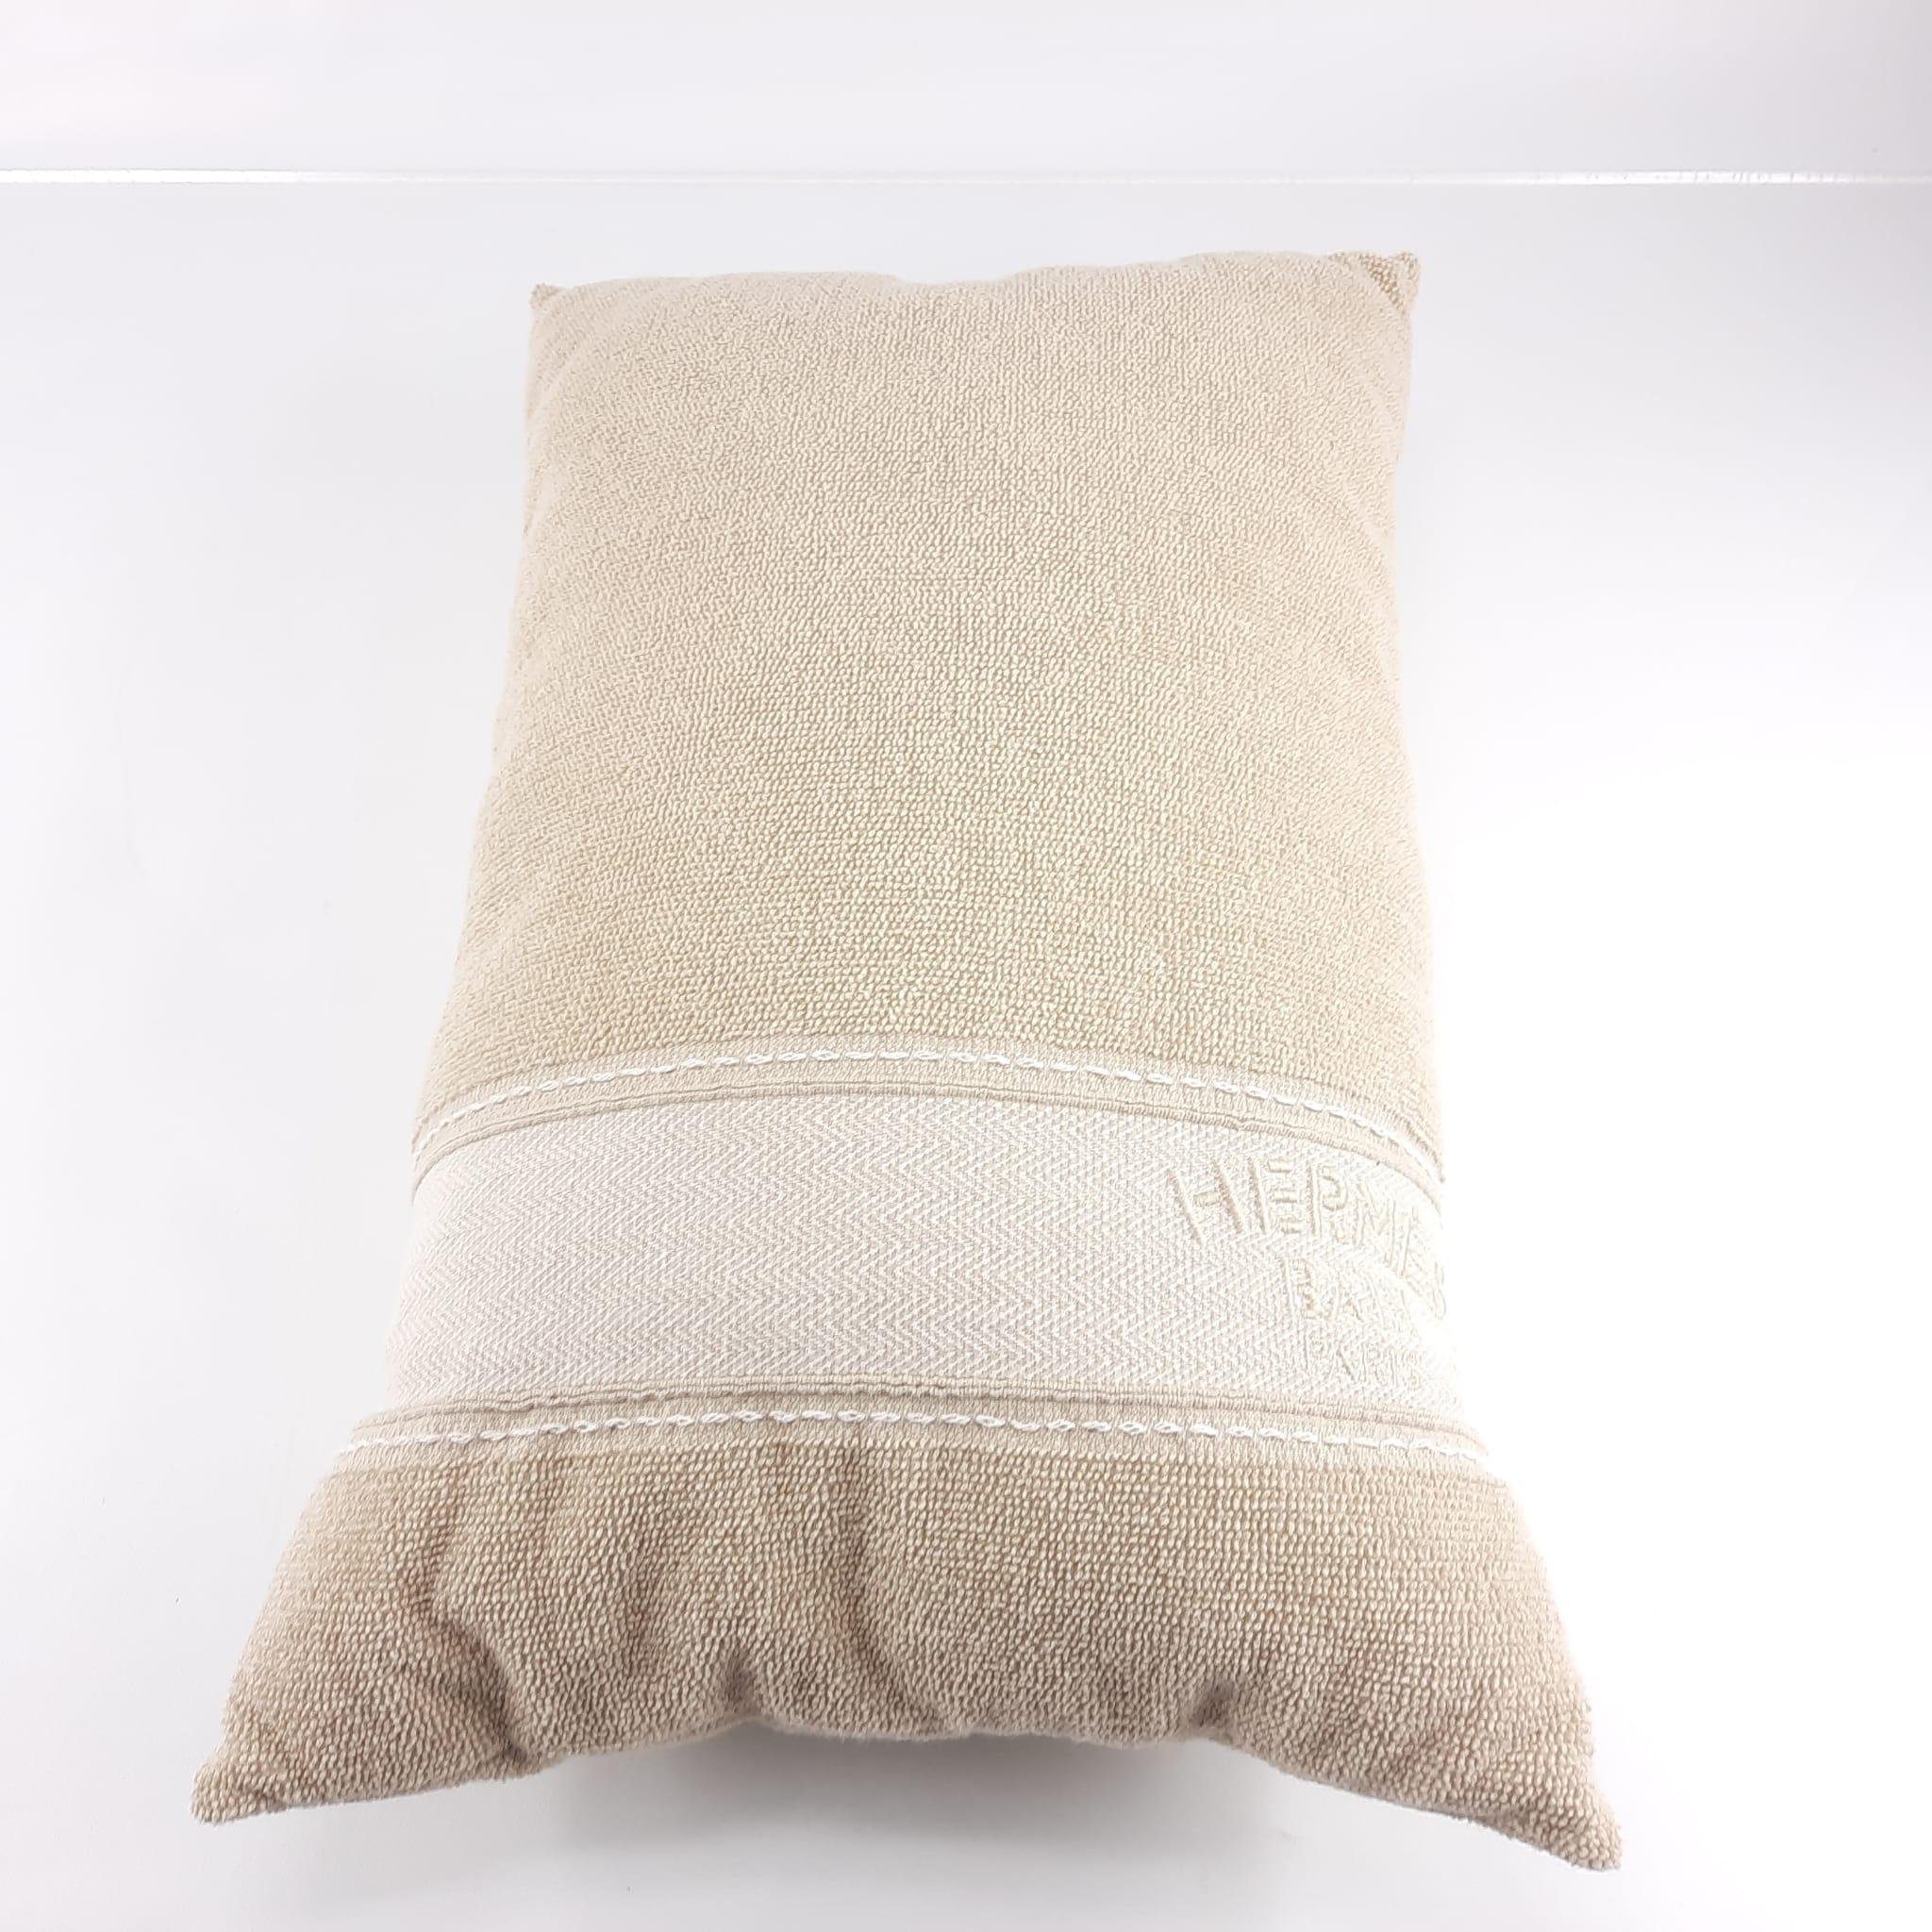 Hermes Uni beach pillow yatch Sable cotton For Sale 1